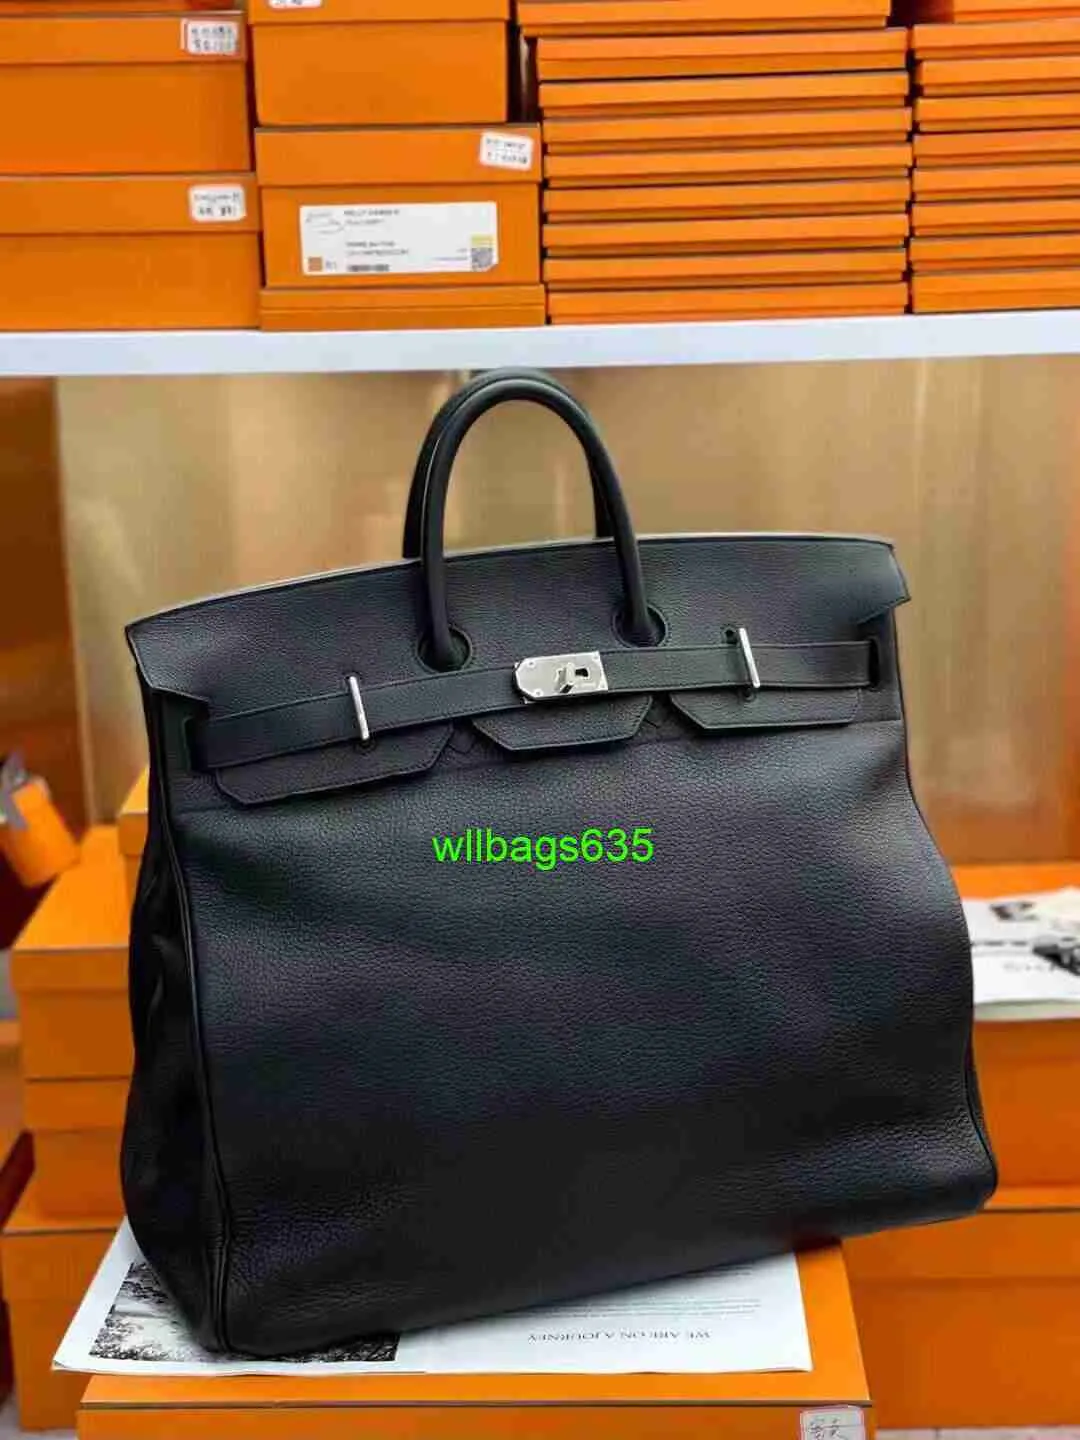 BK Кожаная сумочка доверенная роскошная ограниченная серия Custom Bag 50 Travel Sack для мужчин и женщин унисекс багажный сумка с коровьем верхний слой большой емкость имеет логотип HBW23G